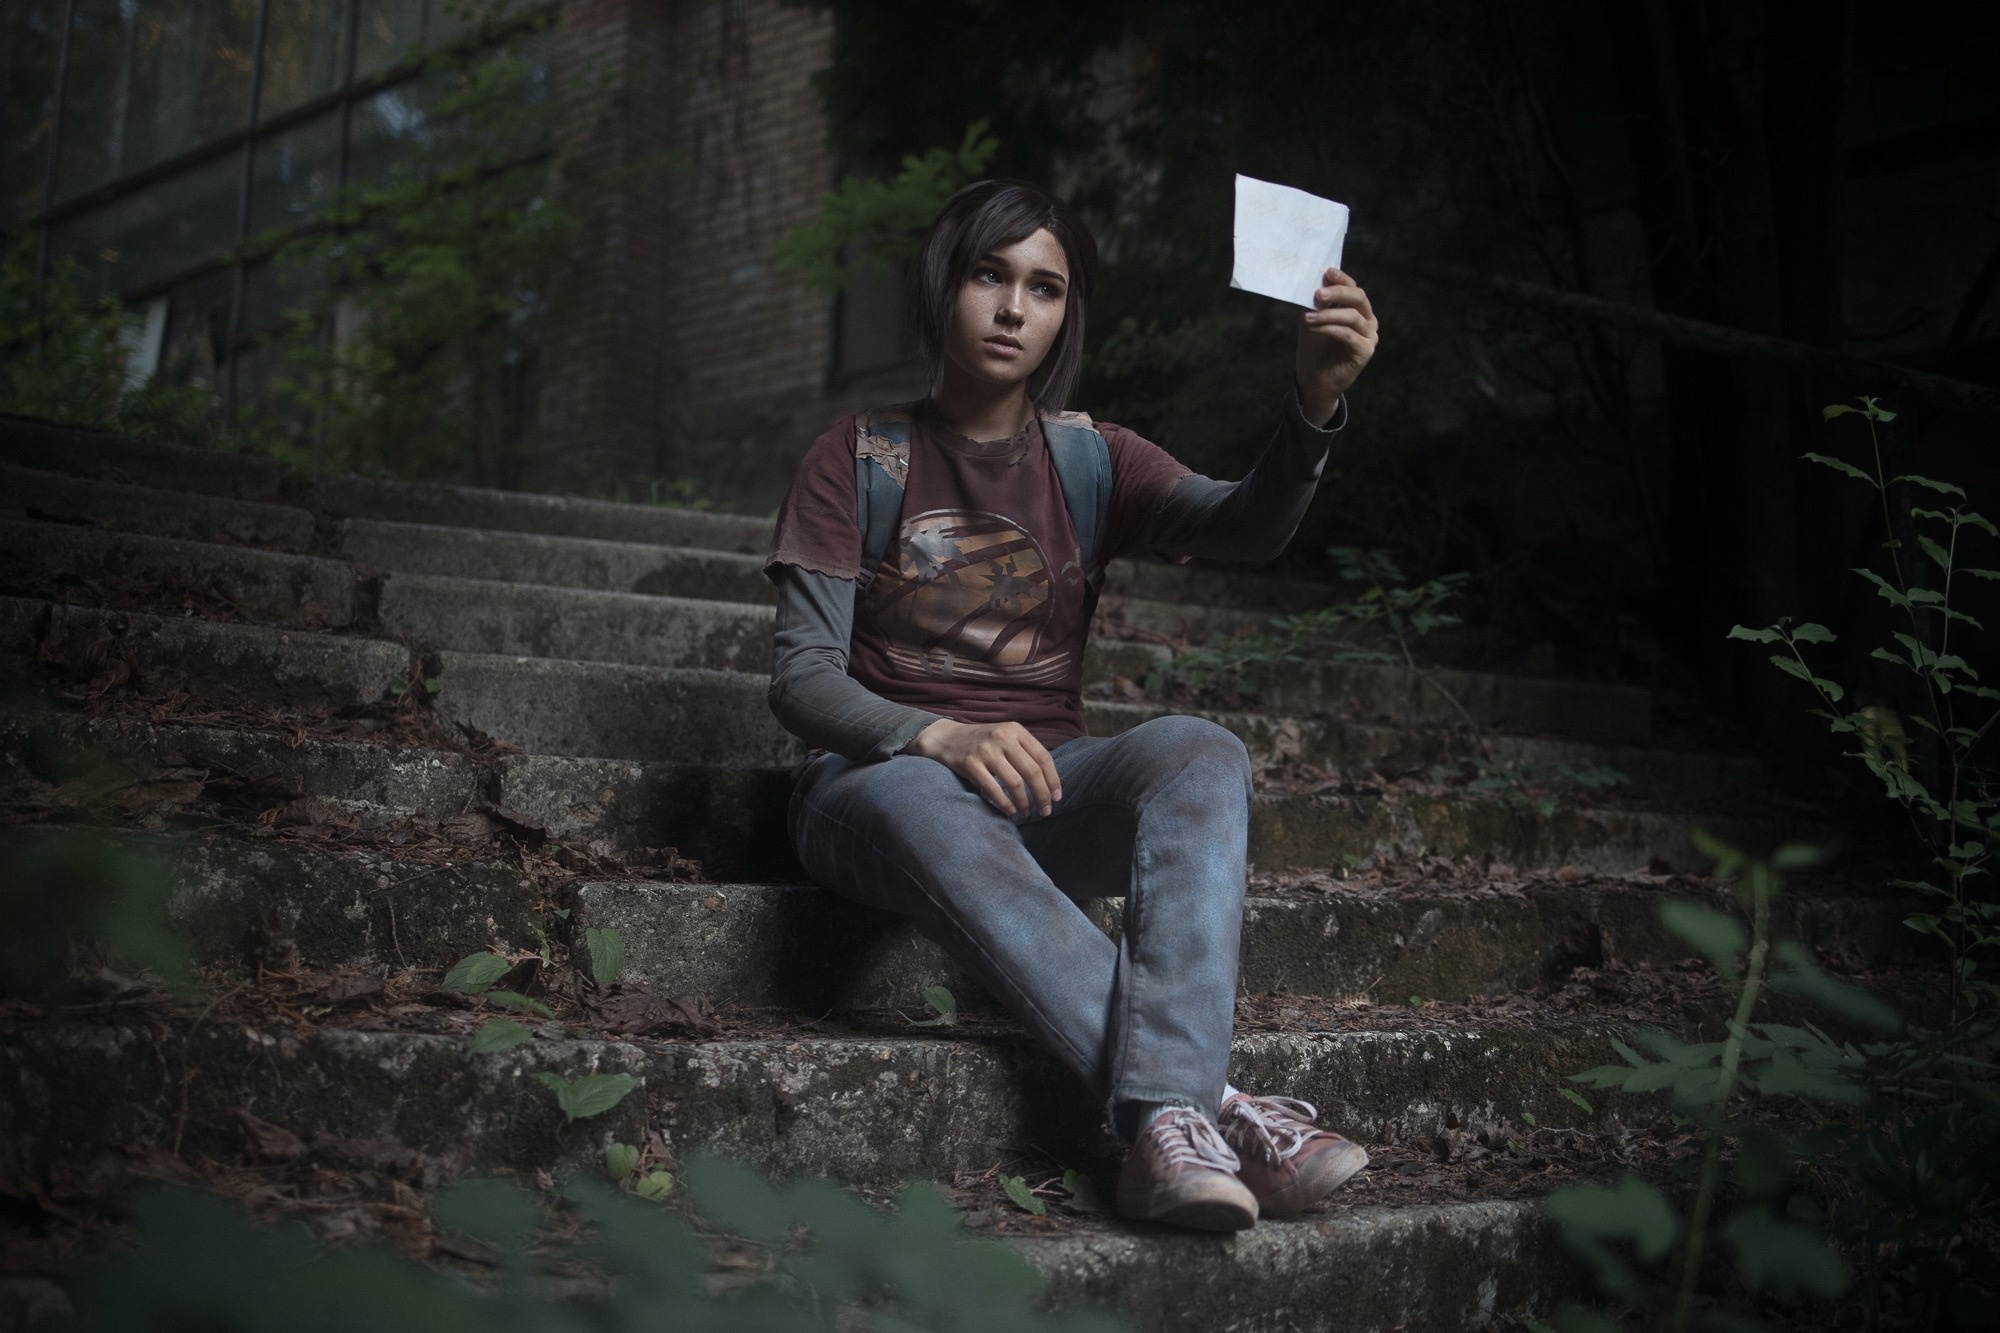 Полина Якунина, известная как mellie, предстала в образе Элли из The Last of Us